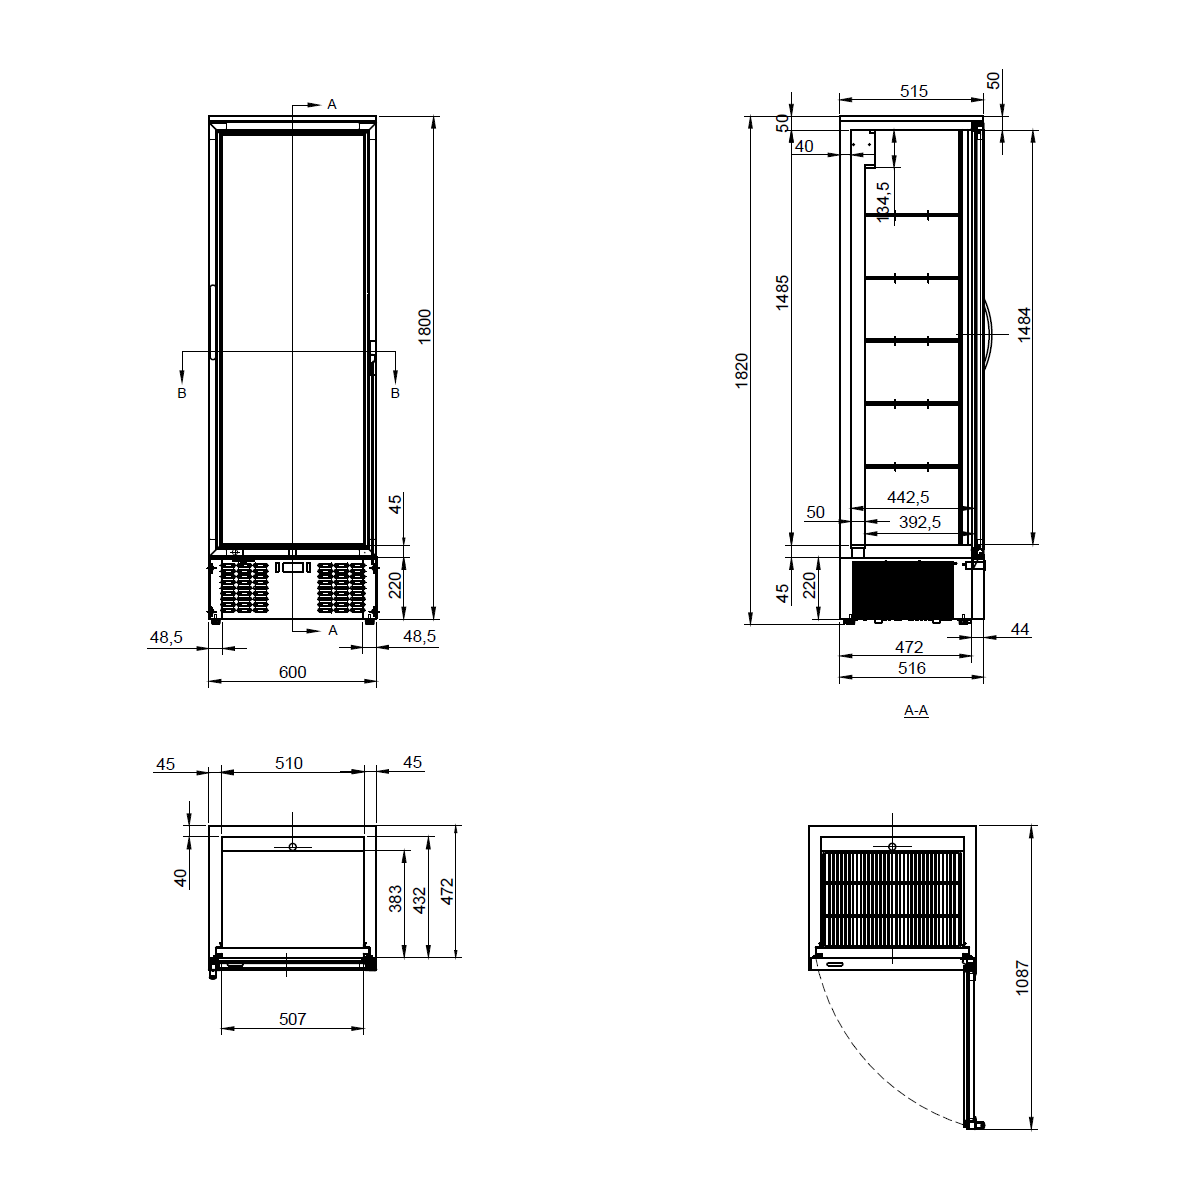 300L Upright Glass Door Display / Backbar Fridge - Black